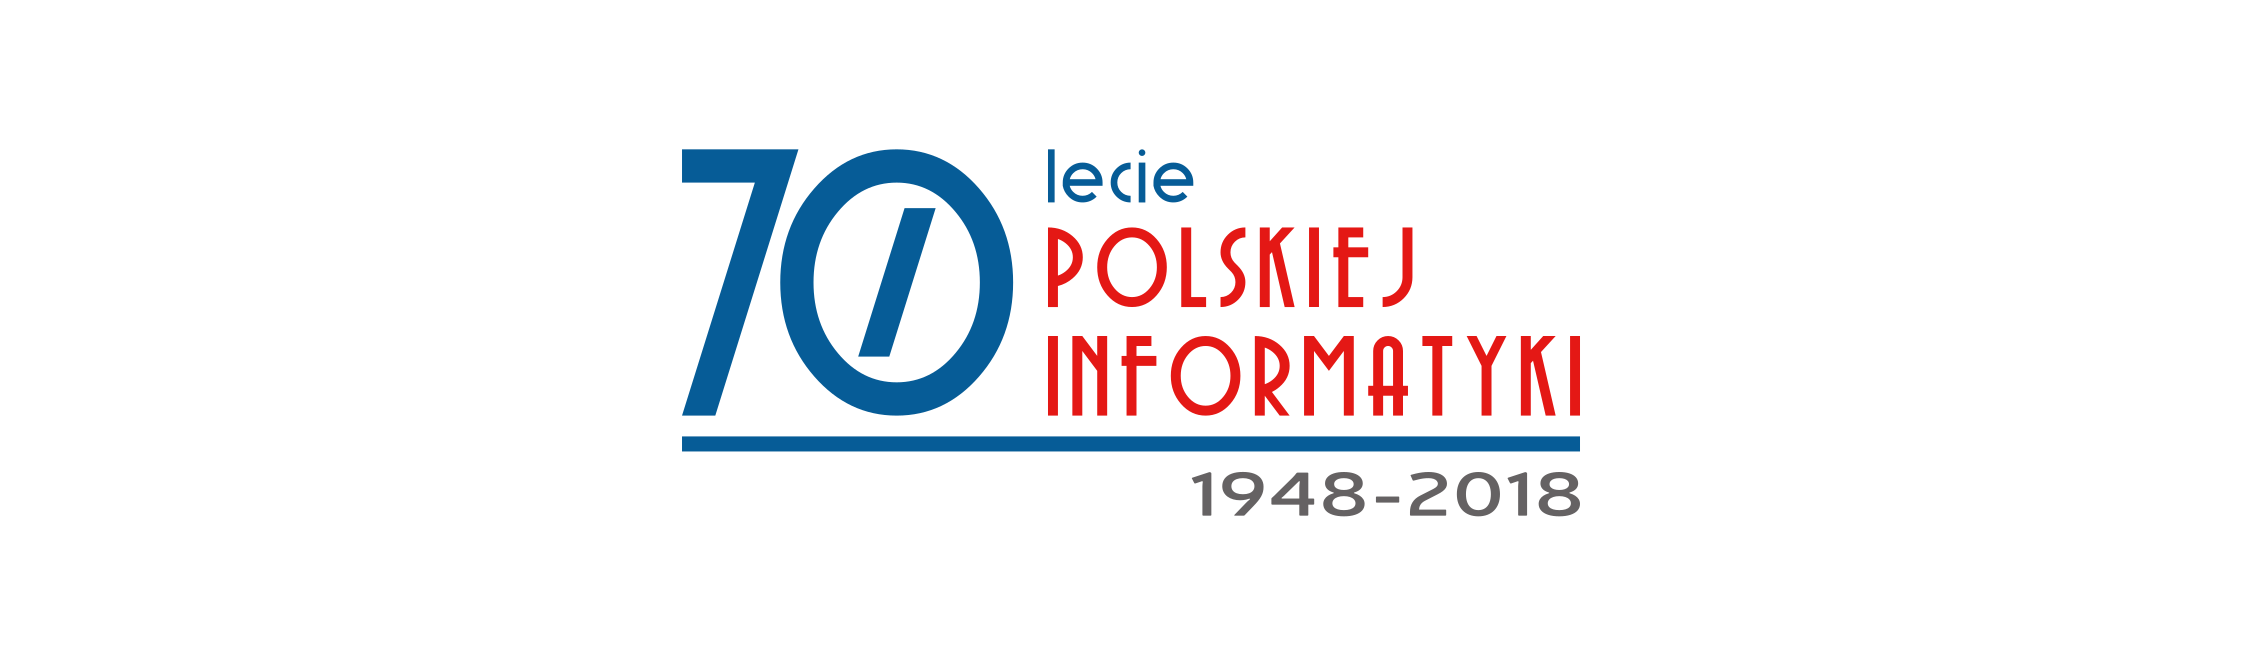 70 lat polskiej informatyki